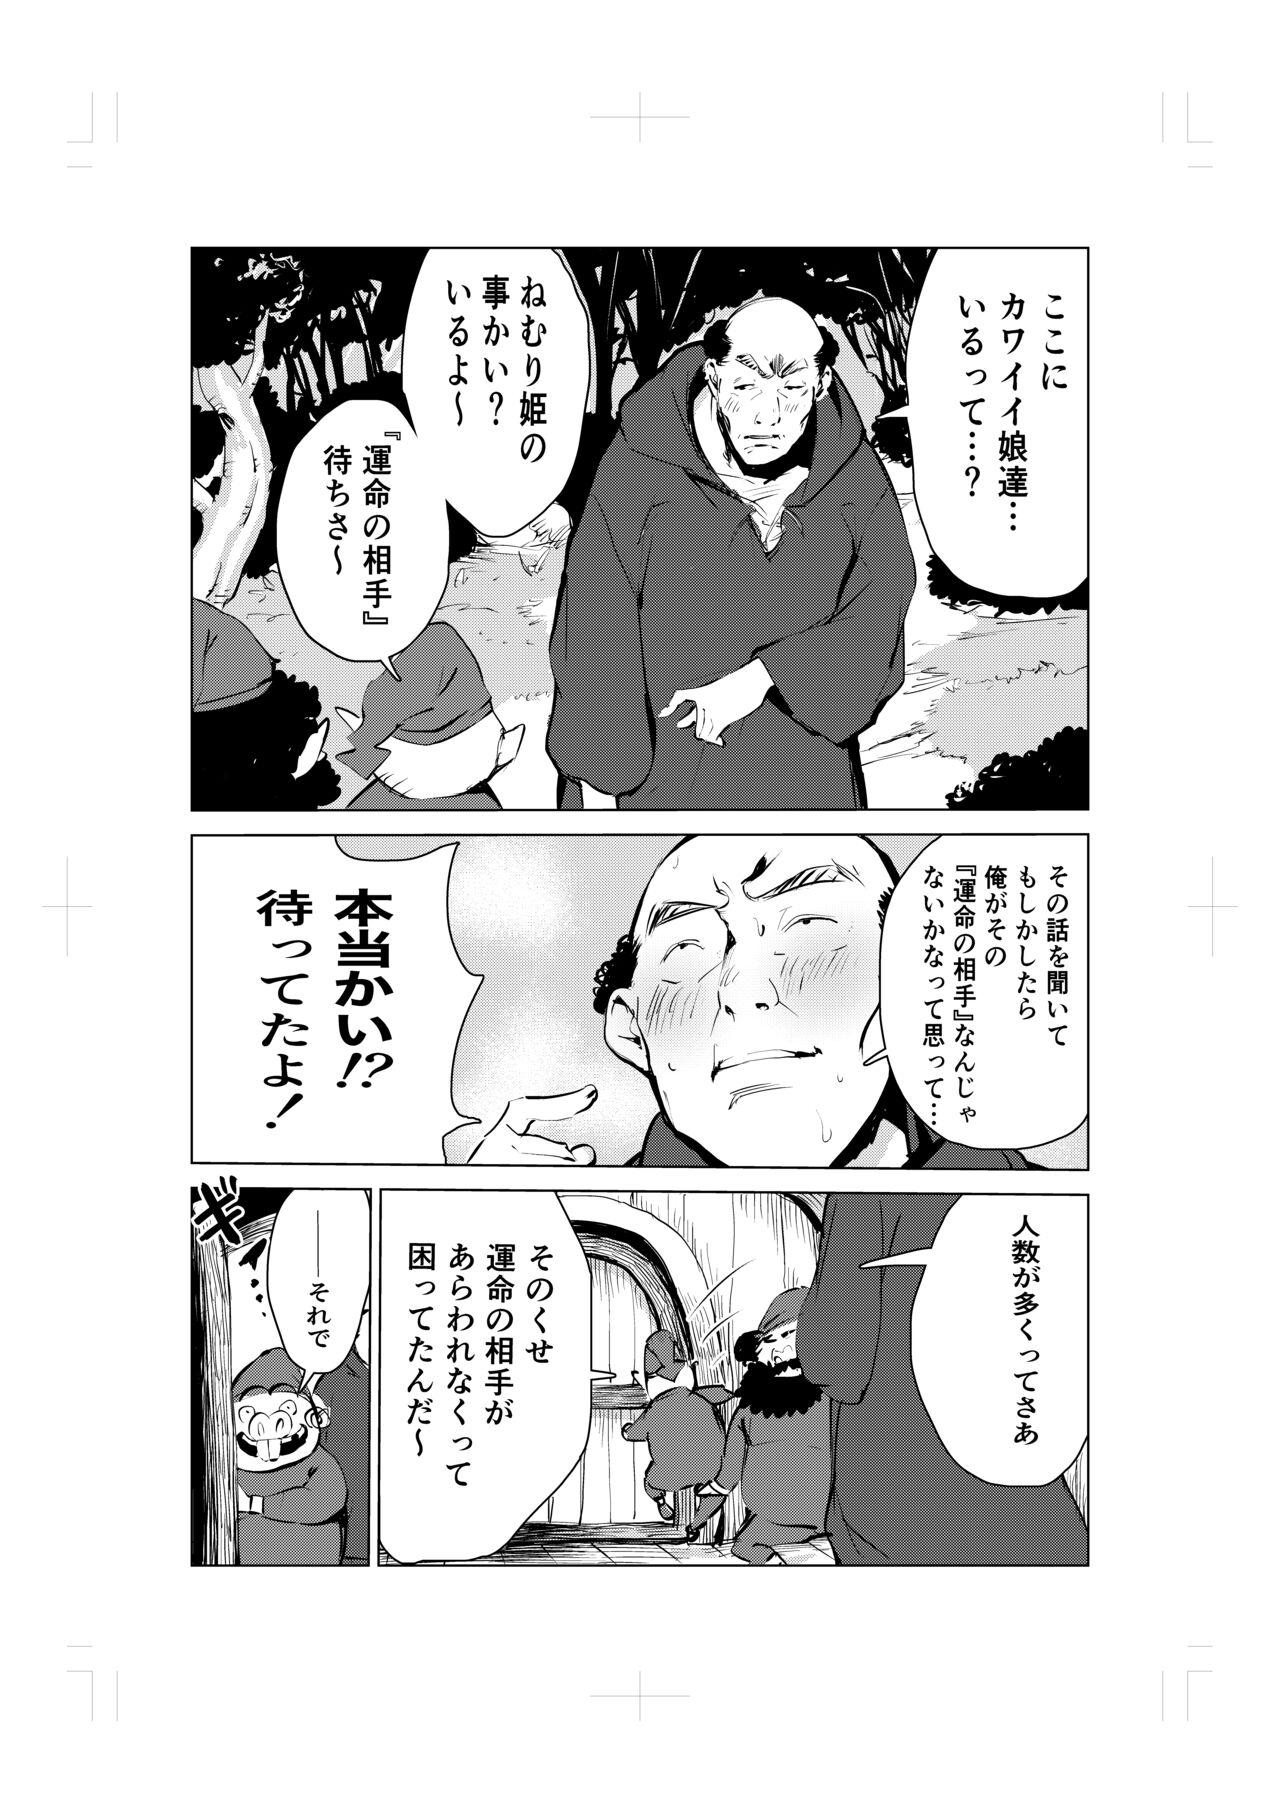 Strapon Nemuri hime no ketsu ana ne bakku monogatari - Original Pierced - Page 5